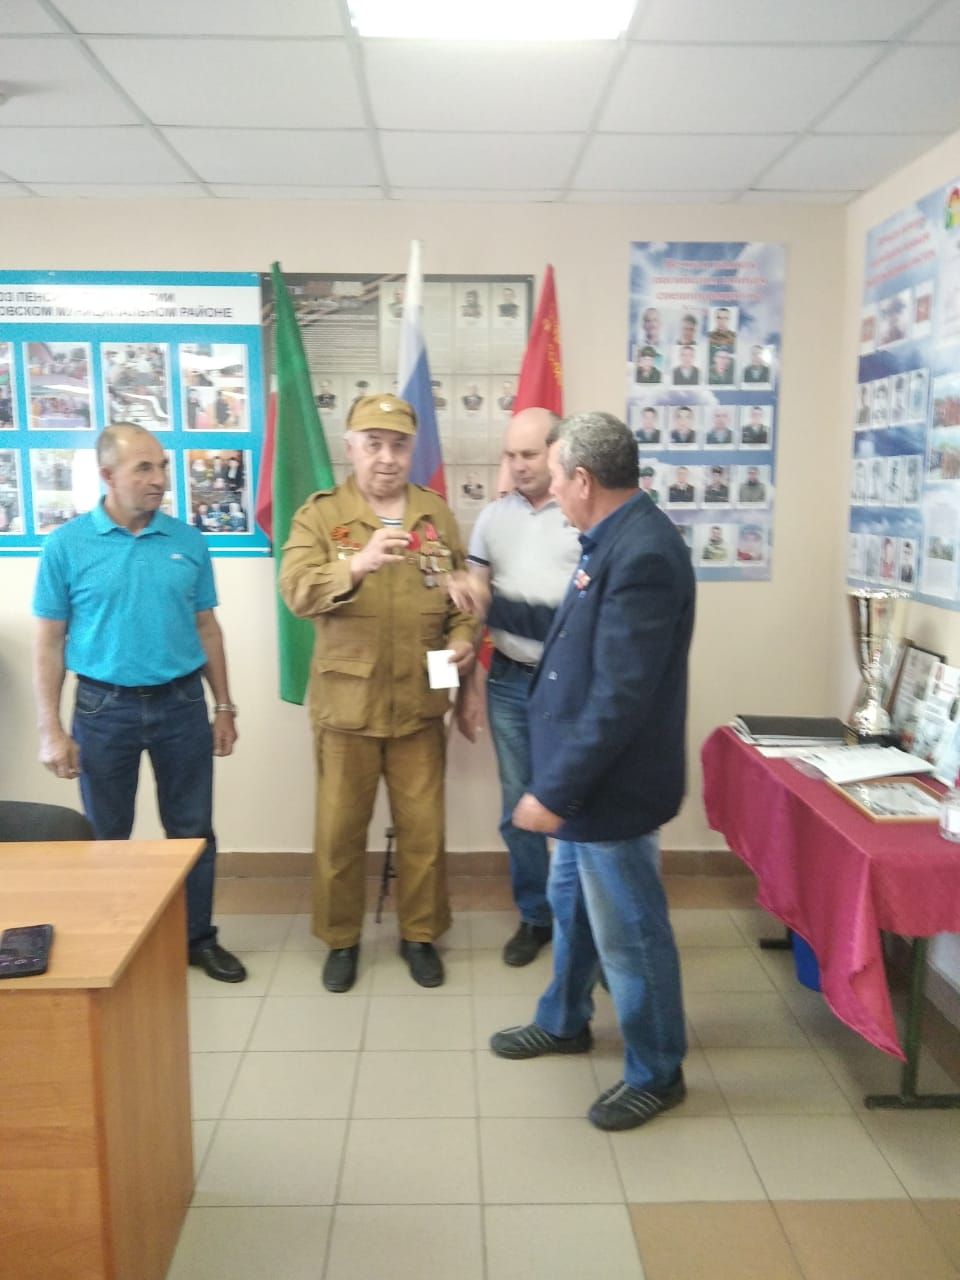 Ветеран боевых действий Дрожжановского района РТ награжден медалью «Отличный водитель»